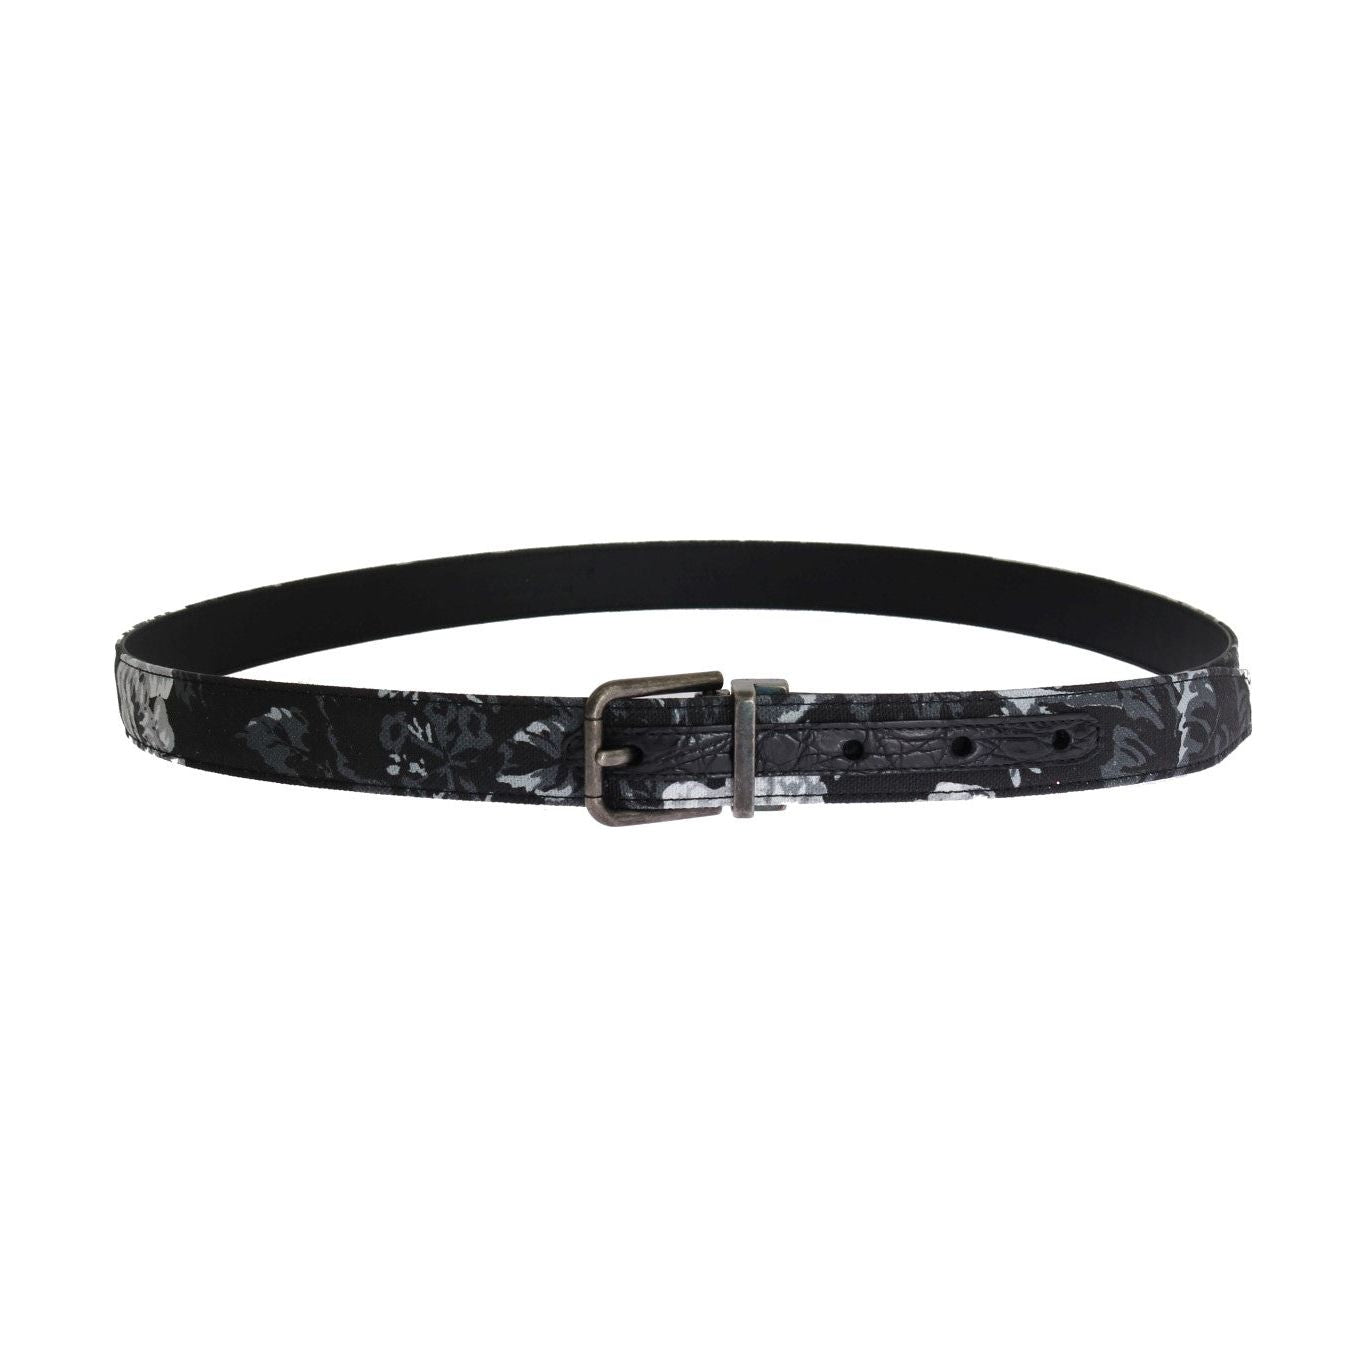 Dolce & Gabbana Elegant Floral Patterned Men's Luxury Belt Belt black-cayman-linen-leather-belt 456472-black-cayman-linen-leather-belt-2.jpg